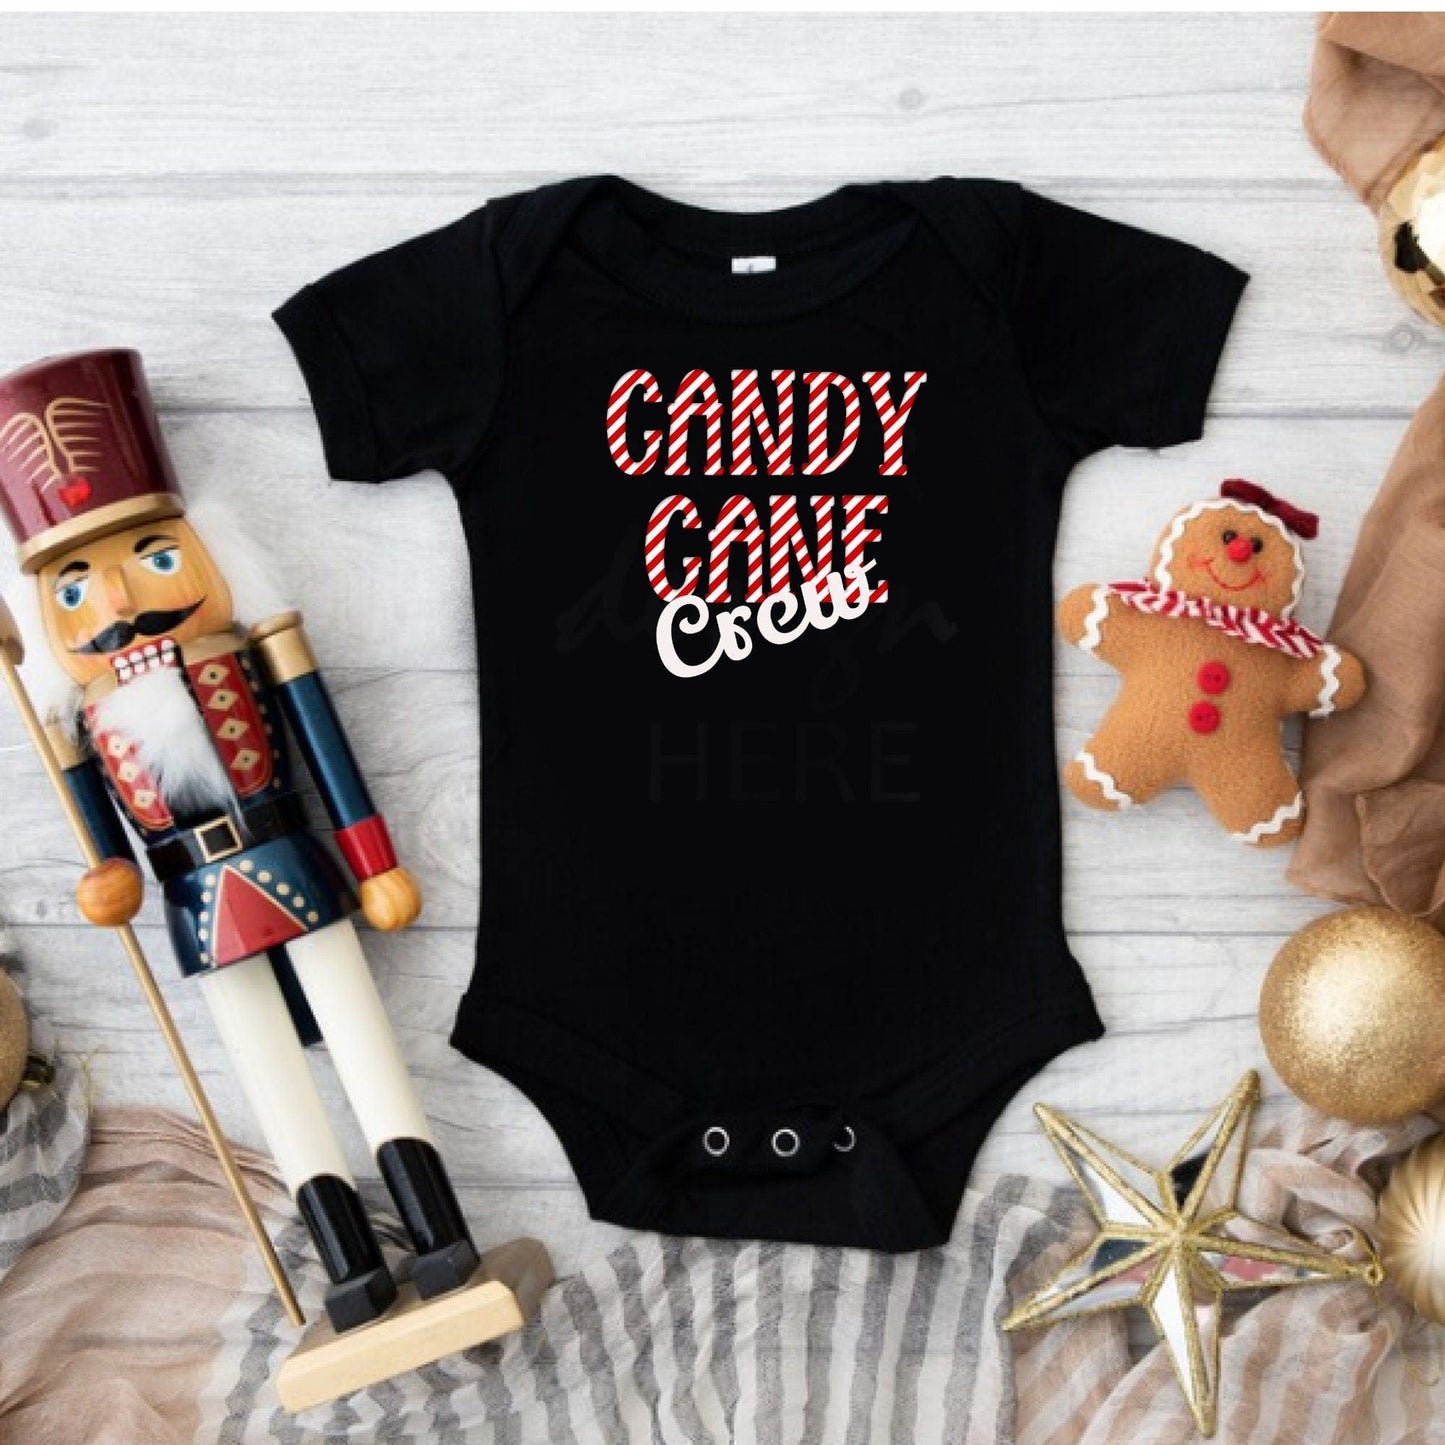 Purple LadyBug Decor Candy Cane Crew Shirts | Christmas Crew Shirts | Gift For Christmas Family | Matching Christmas Shirts, Xmas Matching | Xmas Party Outfit